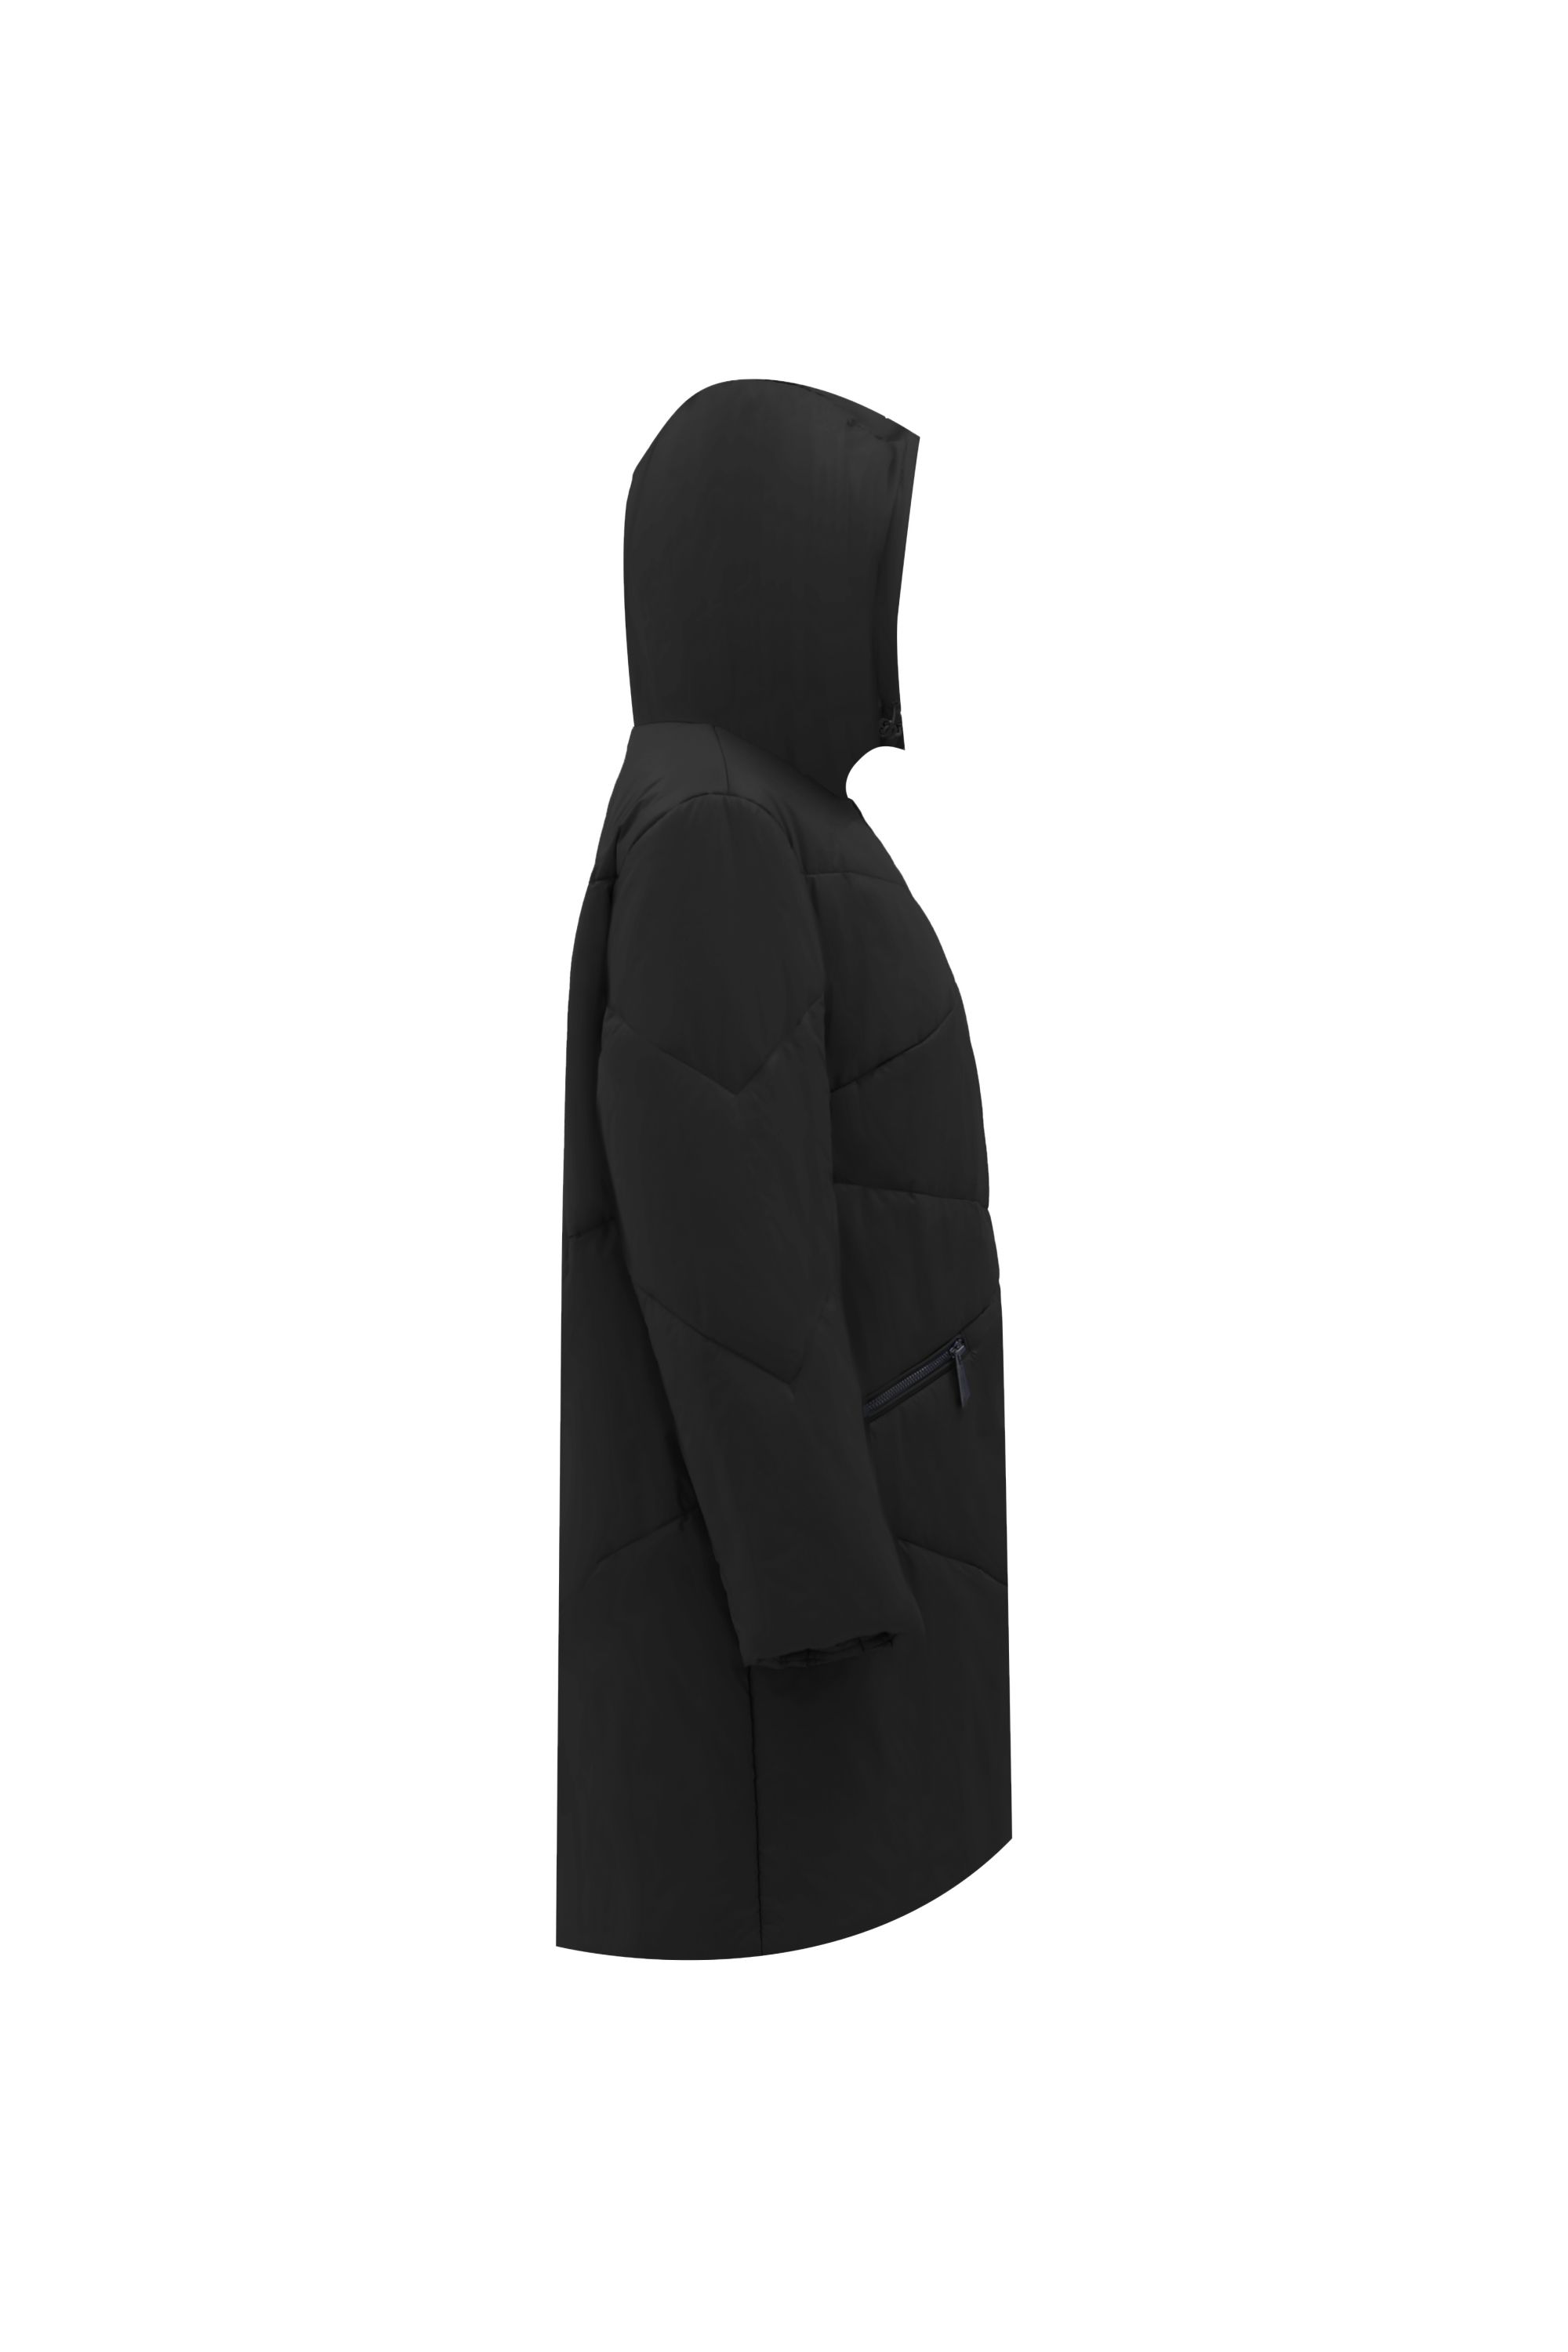 Пальто женское плащевое утепленное 5-12337-1. Фото 2.